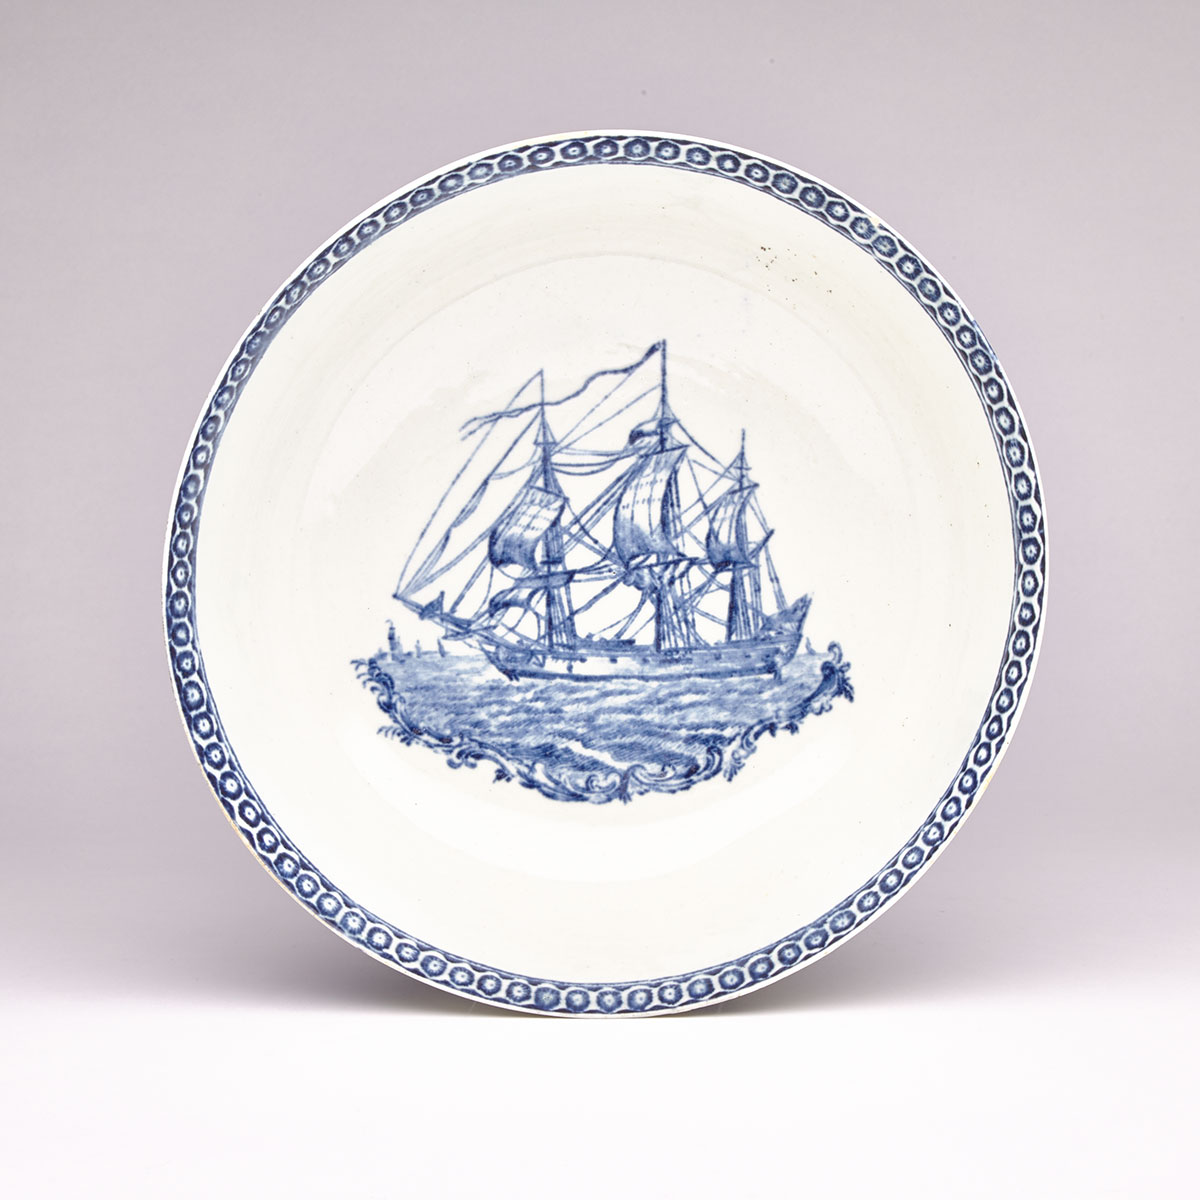 Penningtons, Liverpool ‘Ship’ Bowl, c.1780-85